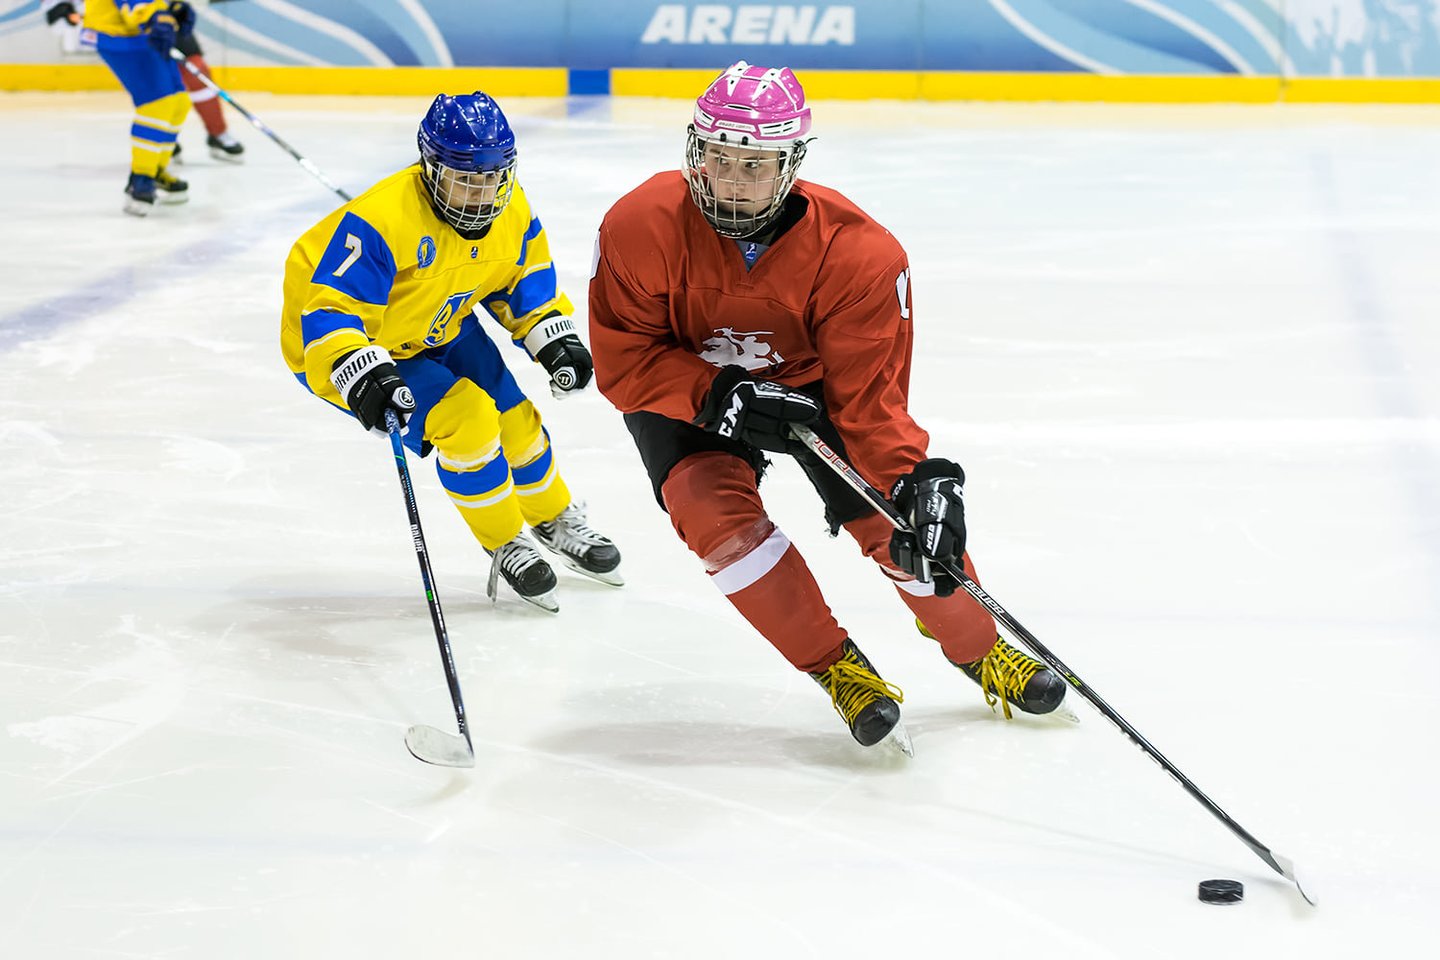  Lietuvos ledo ritulininkė K. Miuller pradeda naują karjeros etapą<br> hockey.lt nuotr.